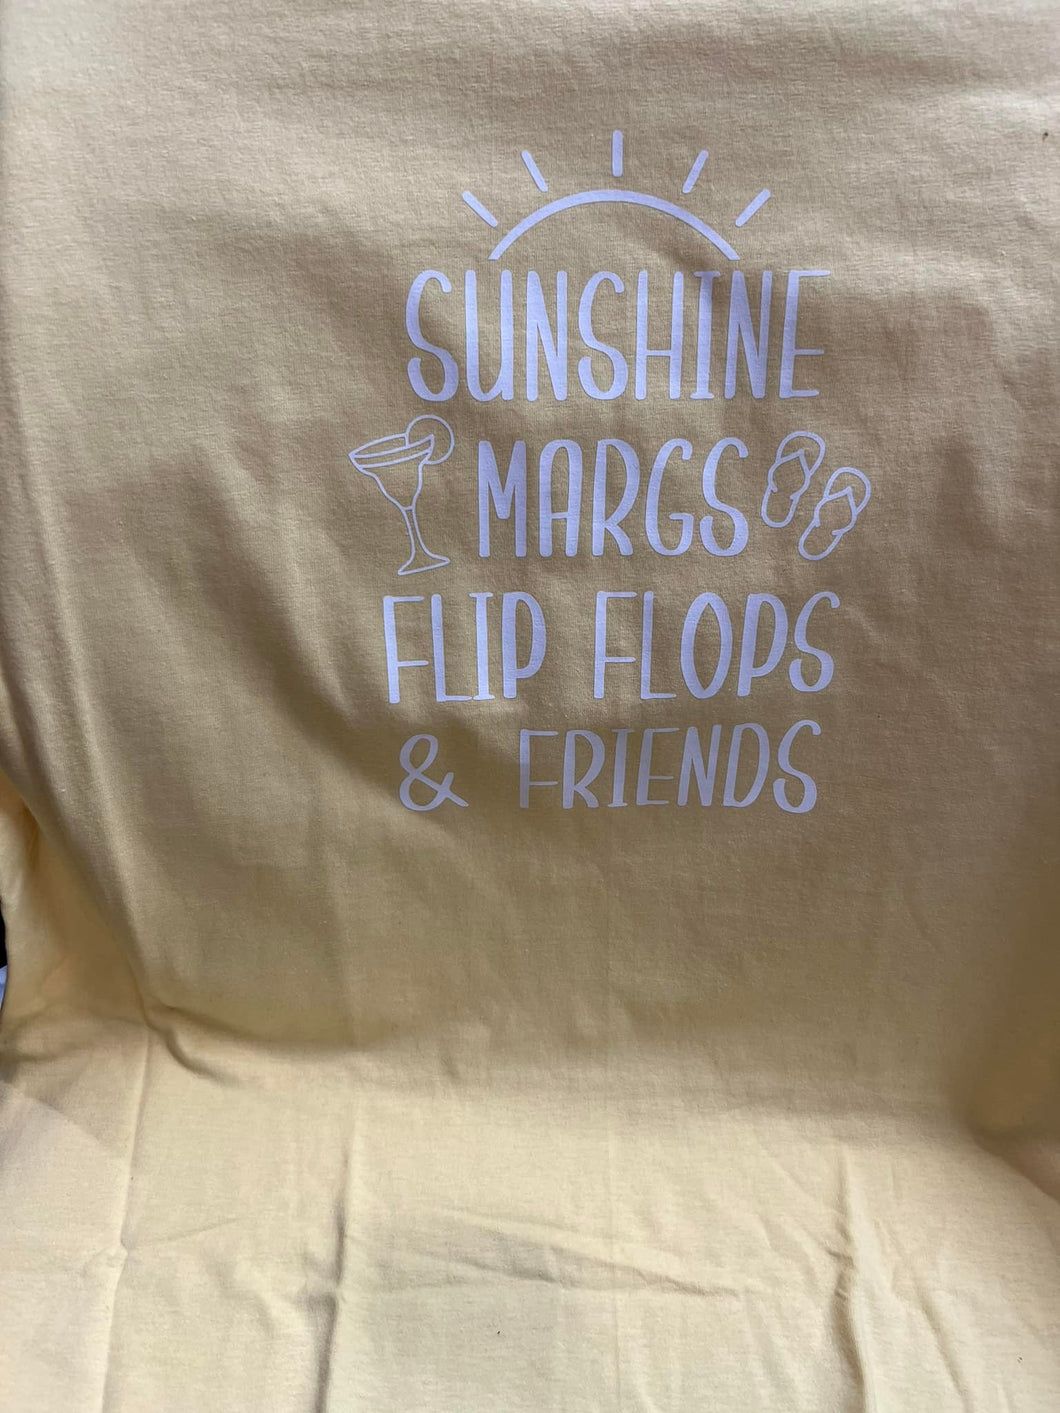 Sunshine Margs Flip Flop Friends Shirt - Size Large